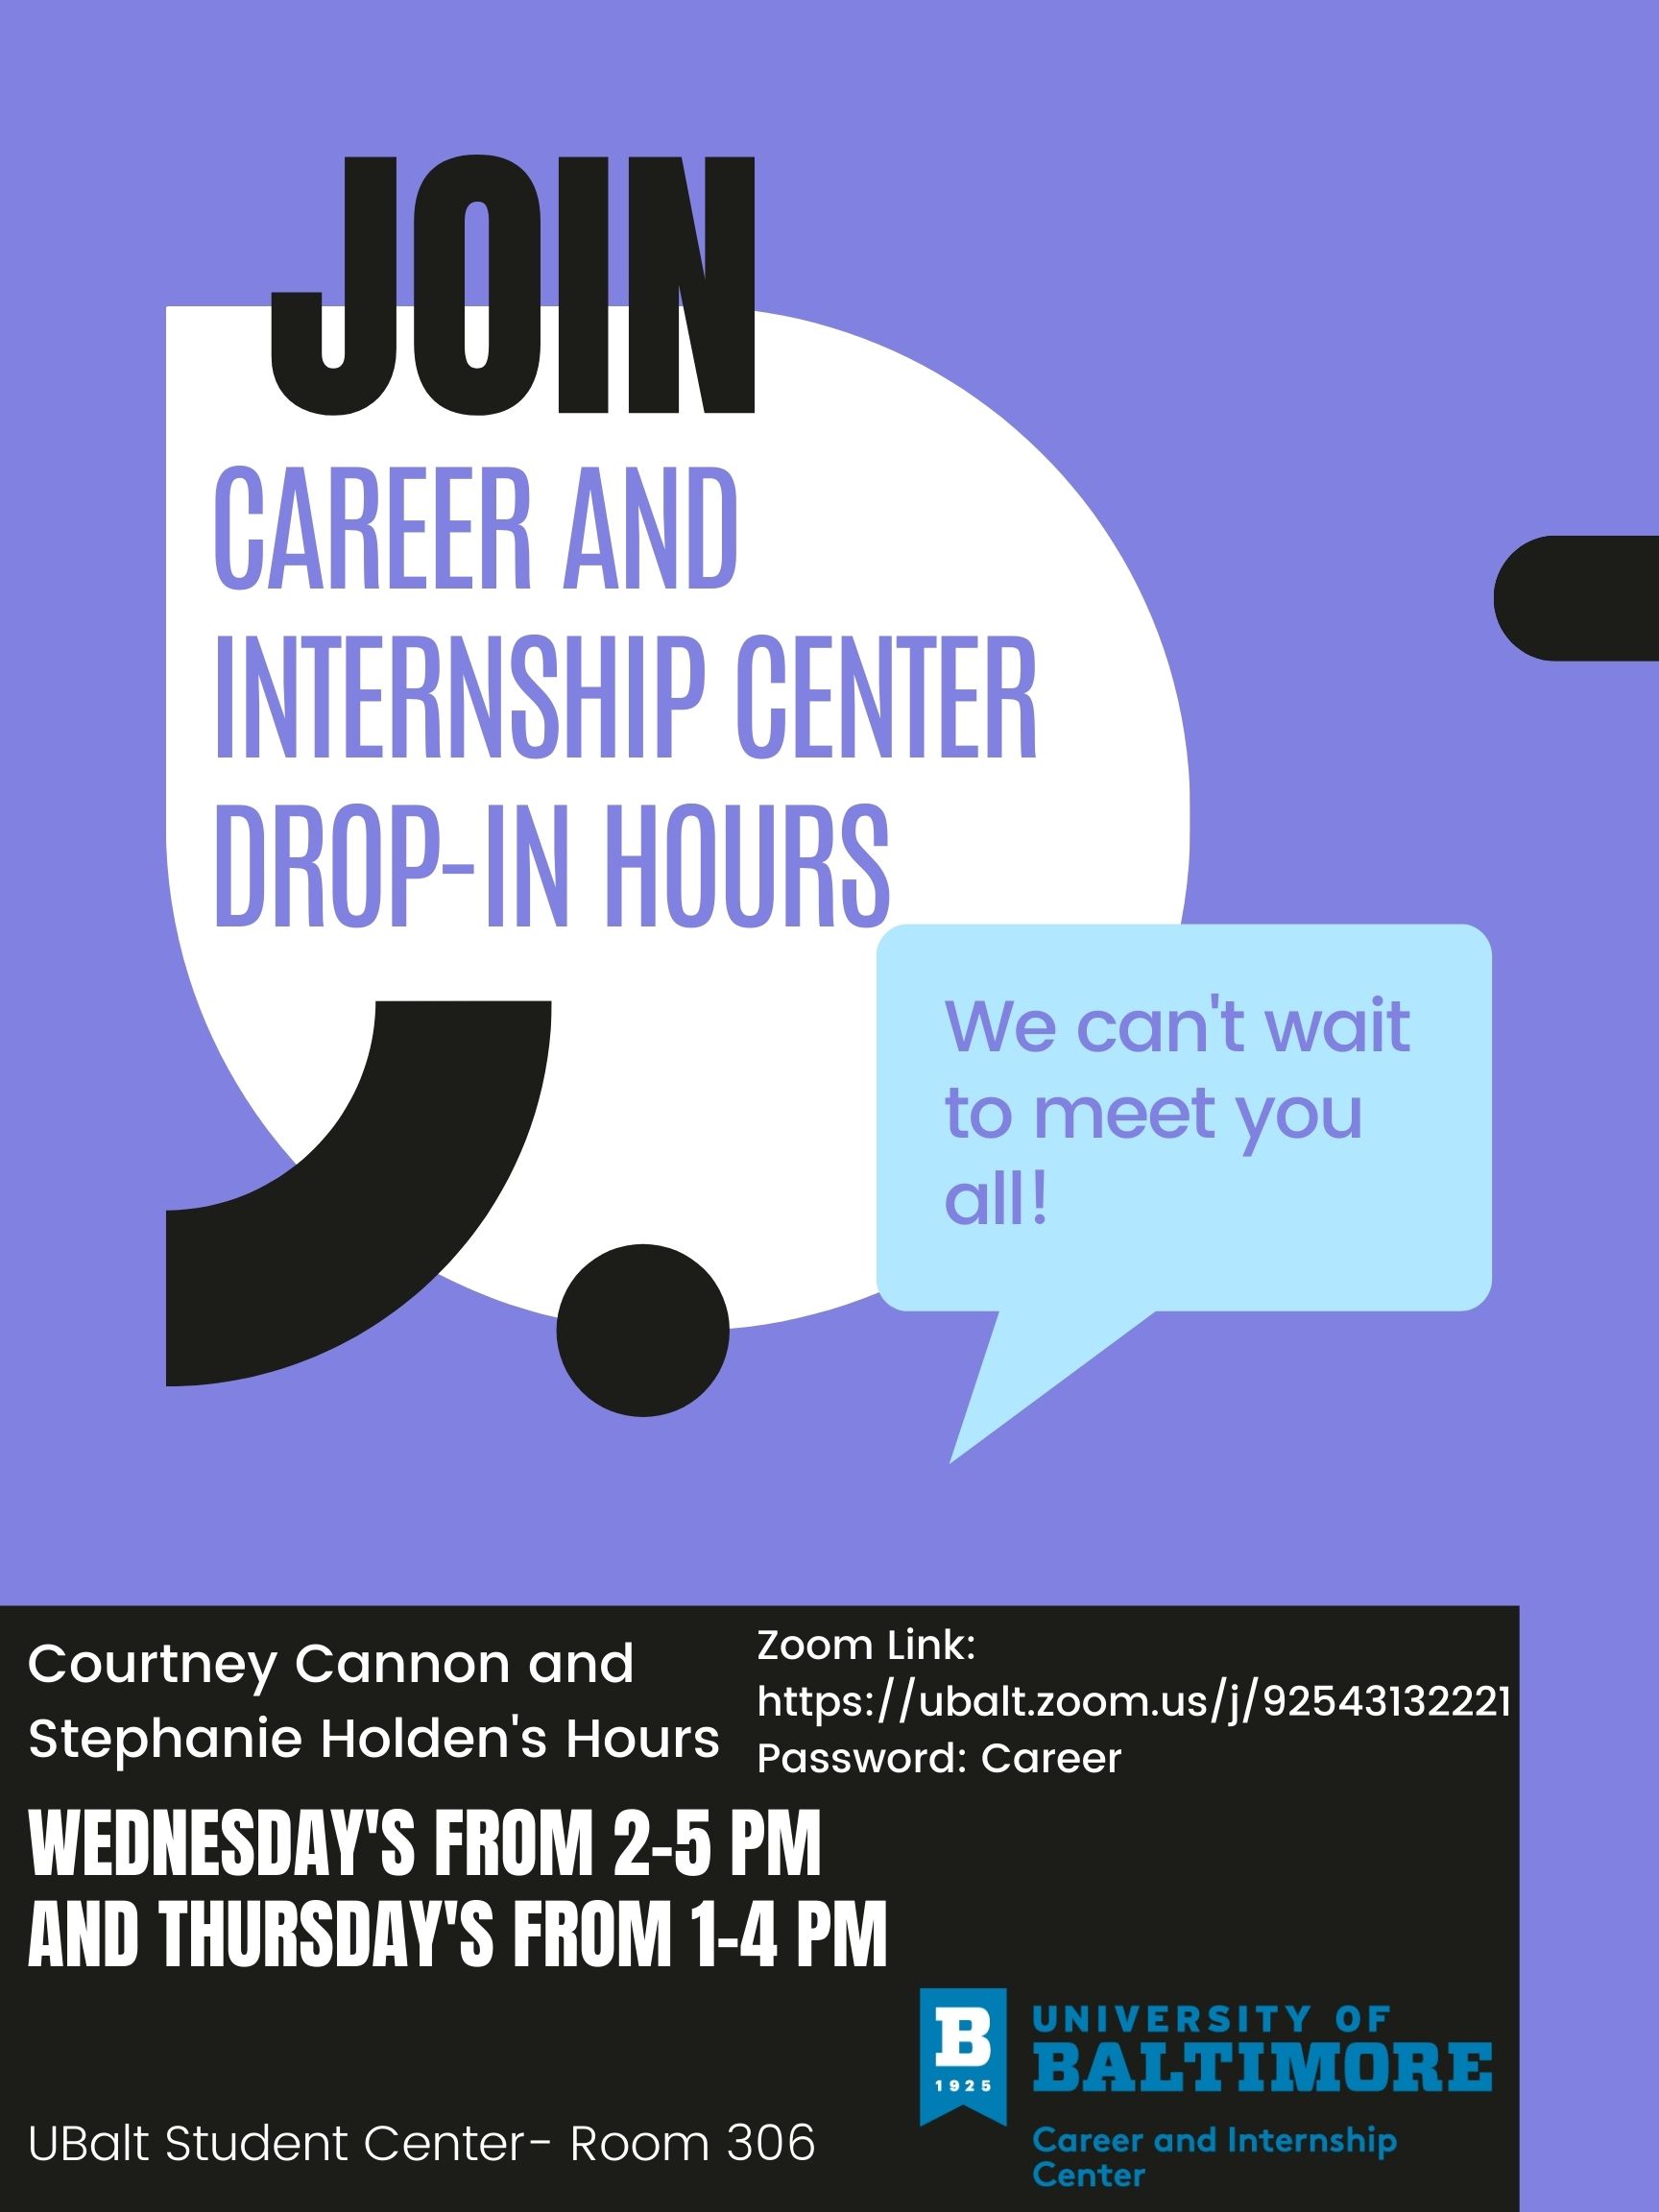 Career Center Drop-In Hours